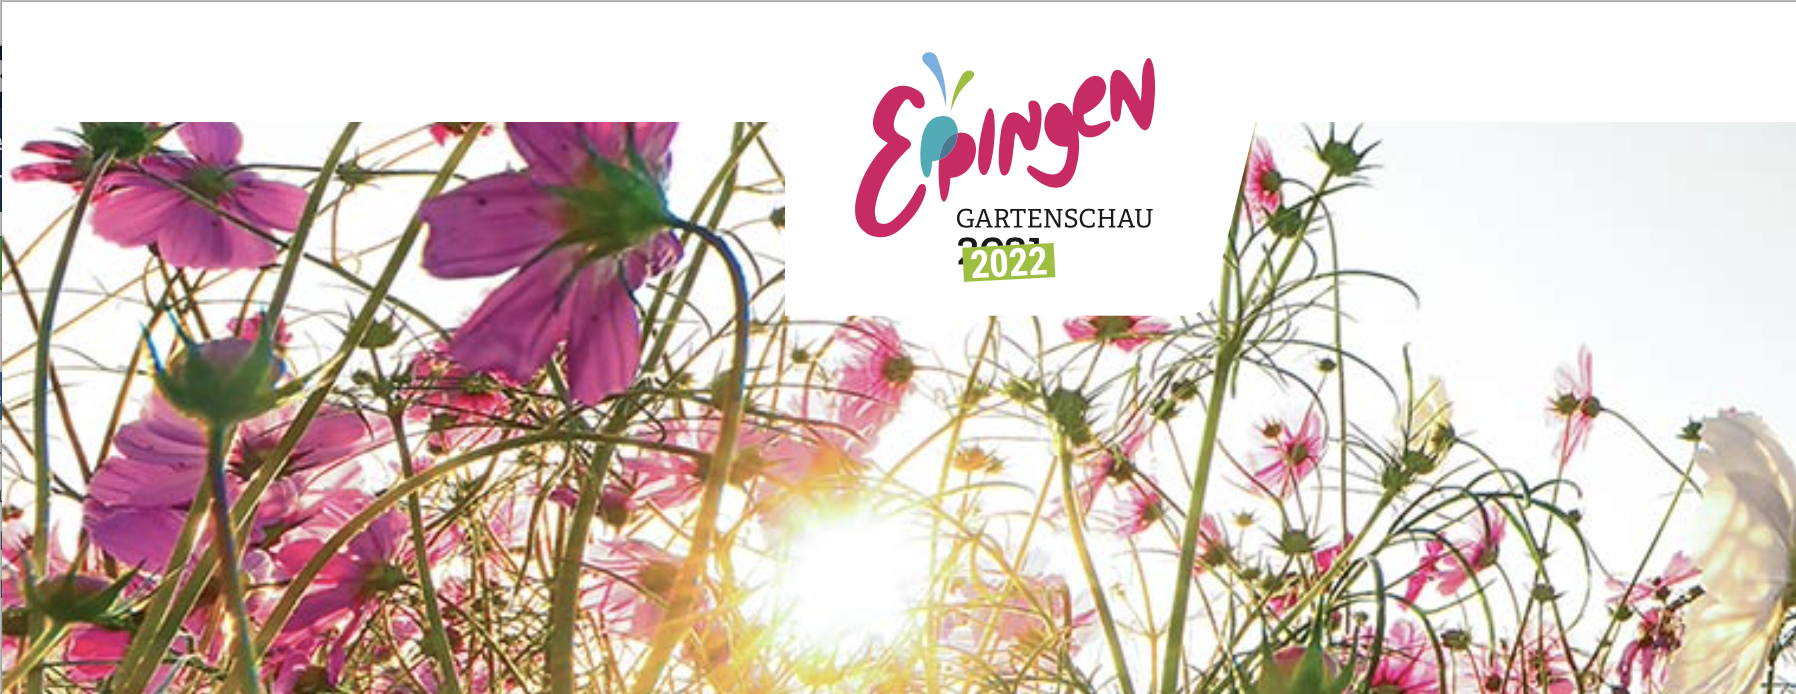 Gartenschau Eppingen 2022